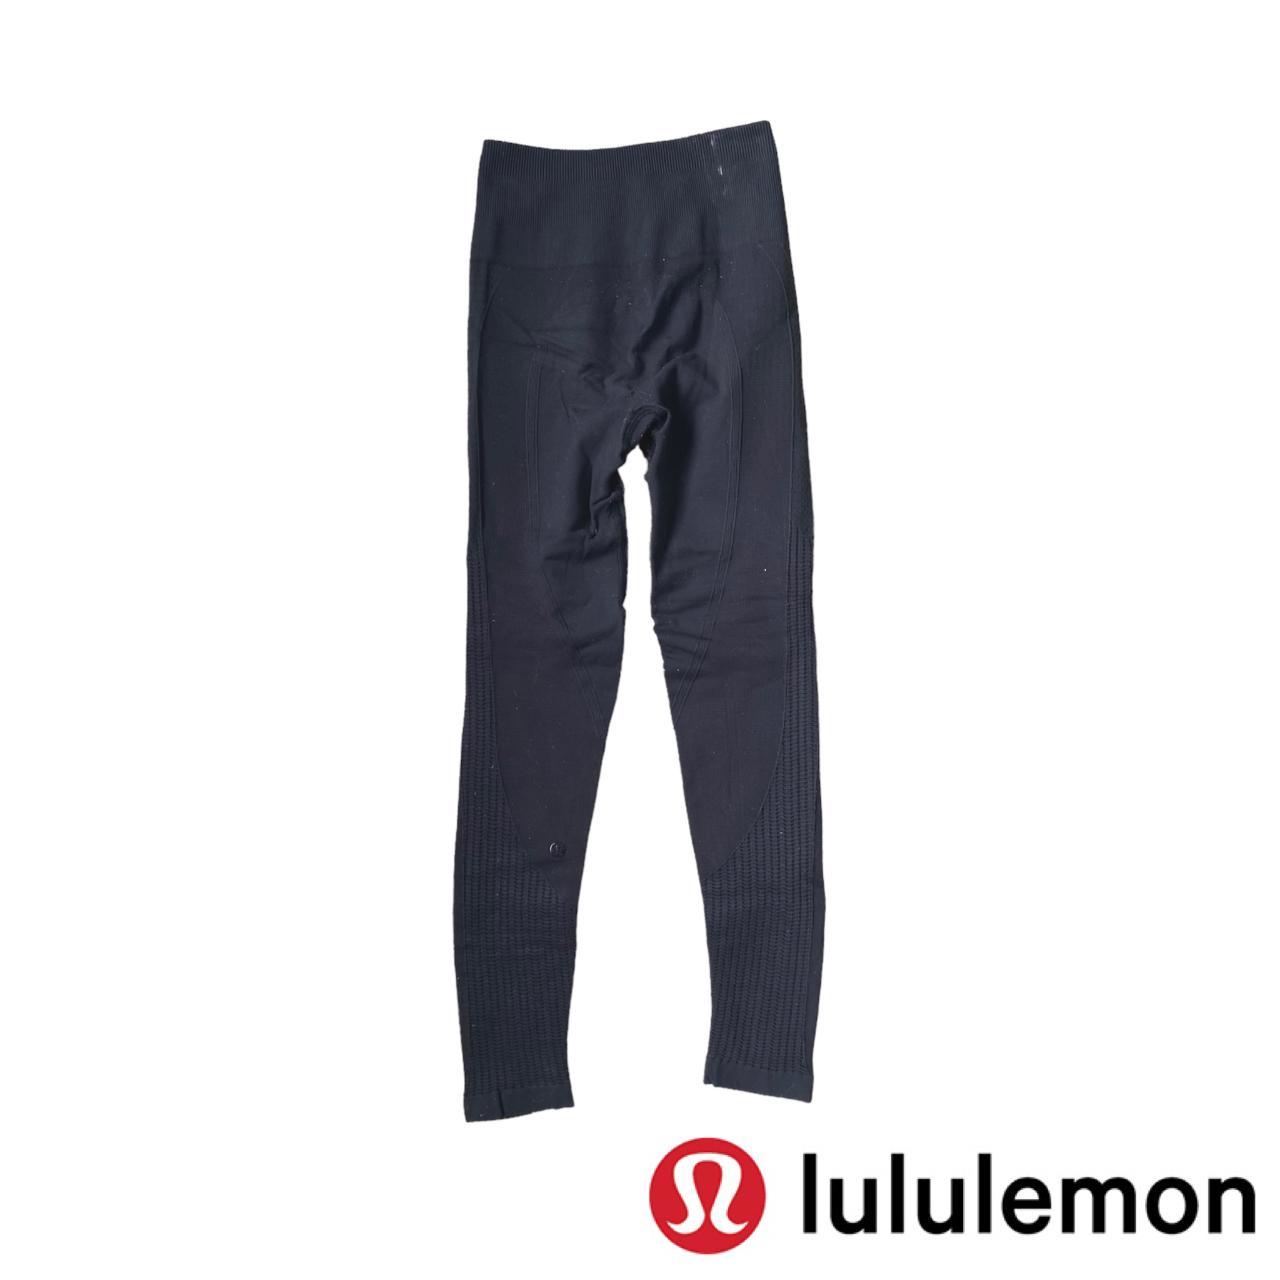 lululemon zone in tight in black, rtp: $128, size